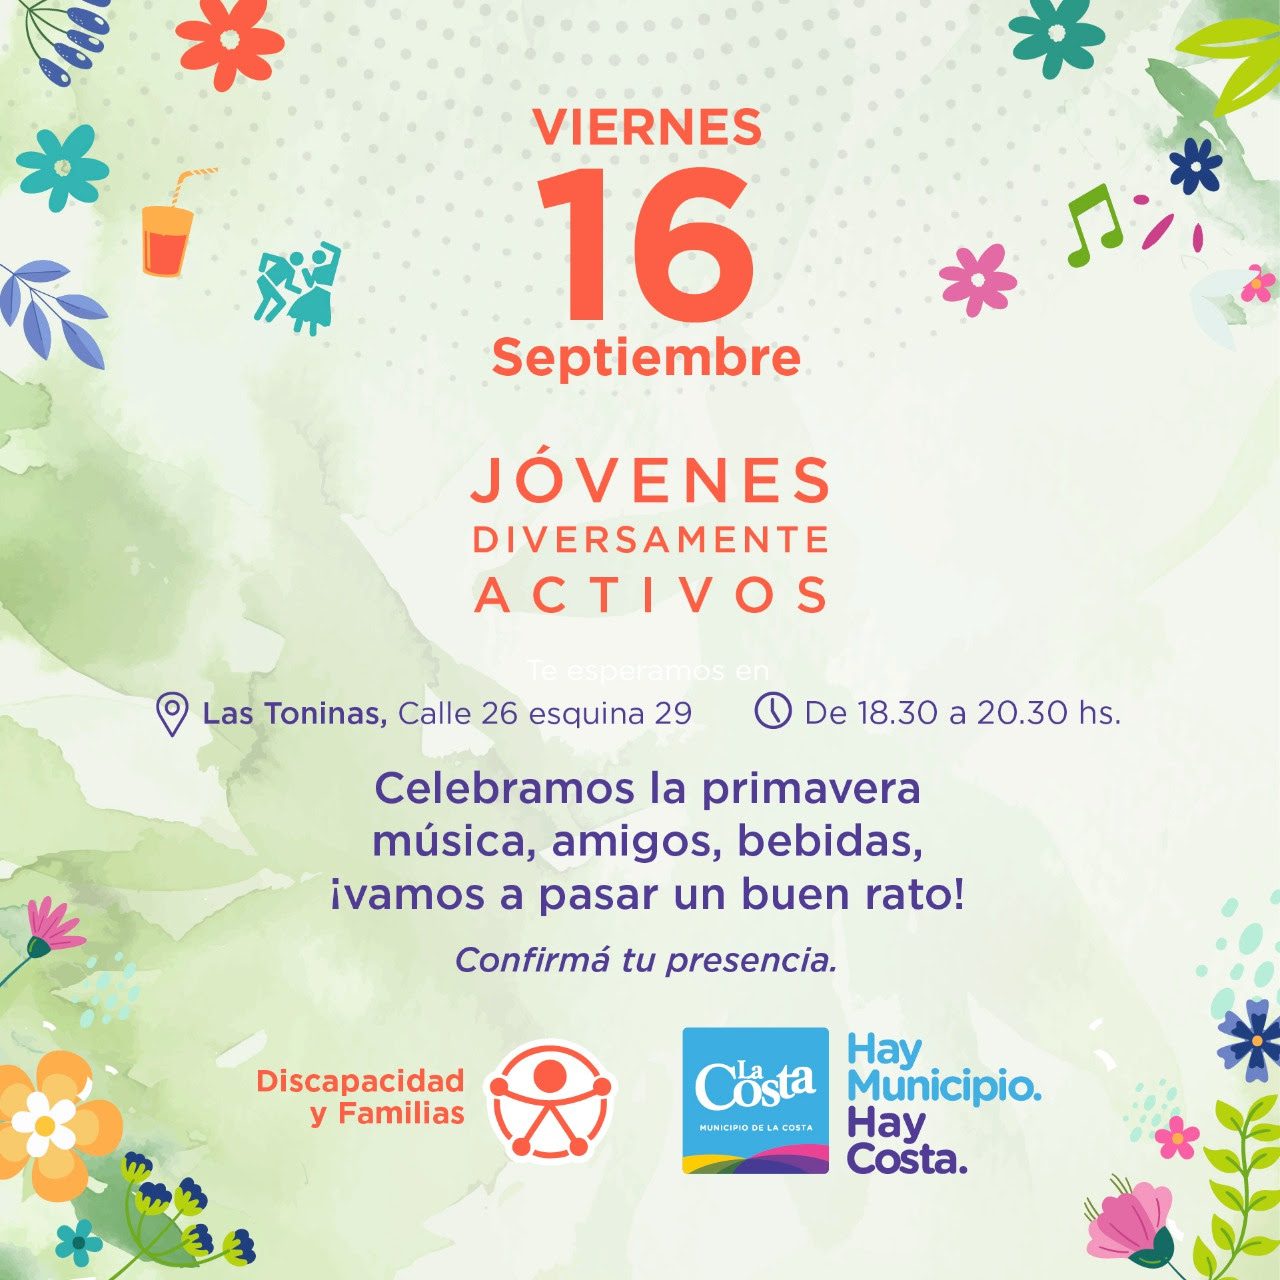 Jóvenes costeros con discapacidad / diversidad funcional celebrarán la primavera en Las Toninas